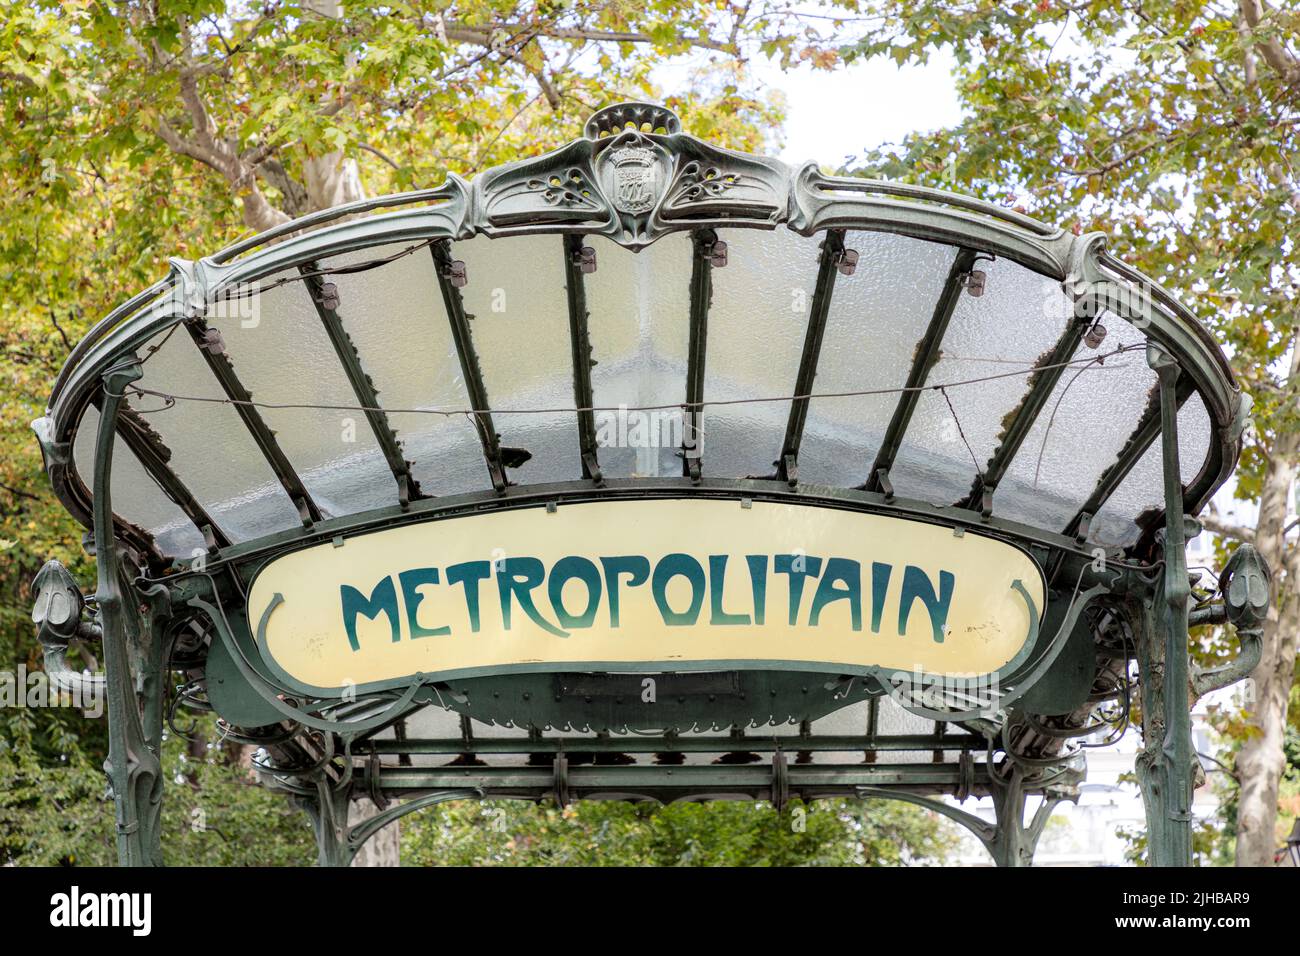 Cartel del Metro de París y dosel de cristal - Diseñado por Hector Guimard, un renombrado arquitecto y diseñador Art Nouveau, París, Ile-de-France, Francia Foto de stock